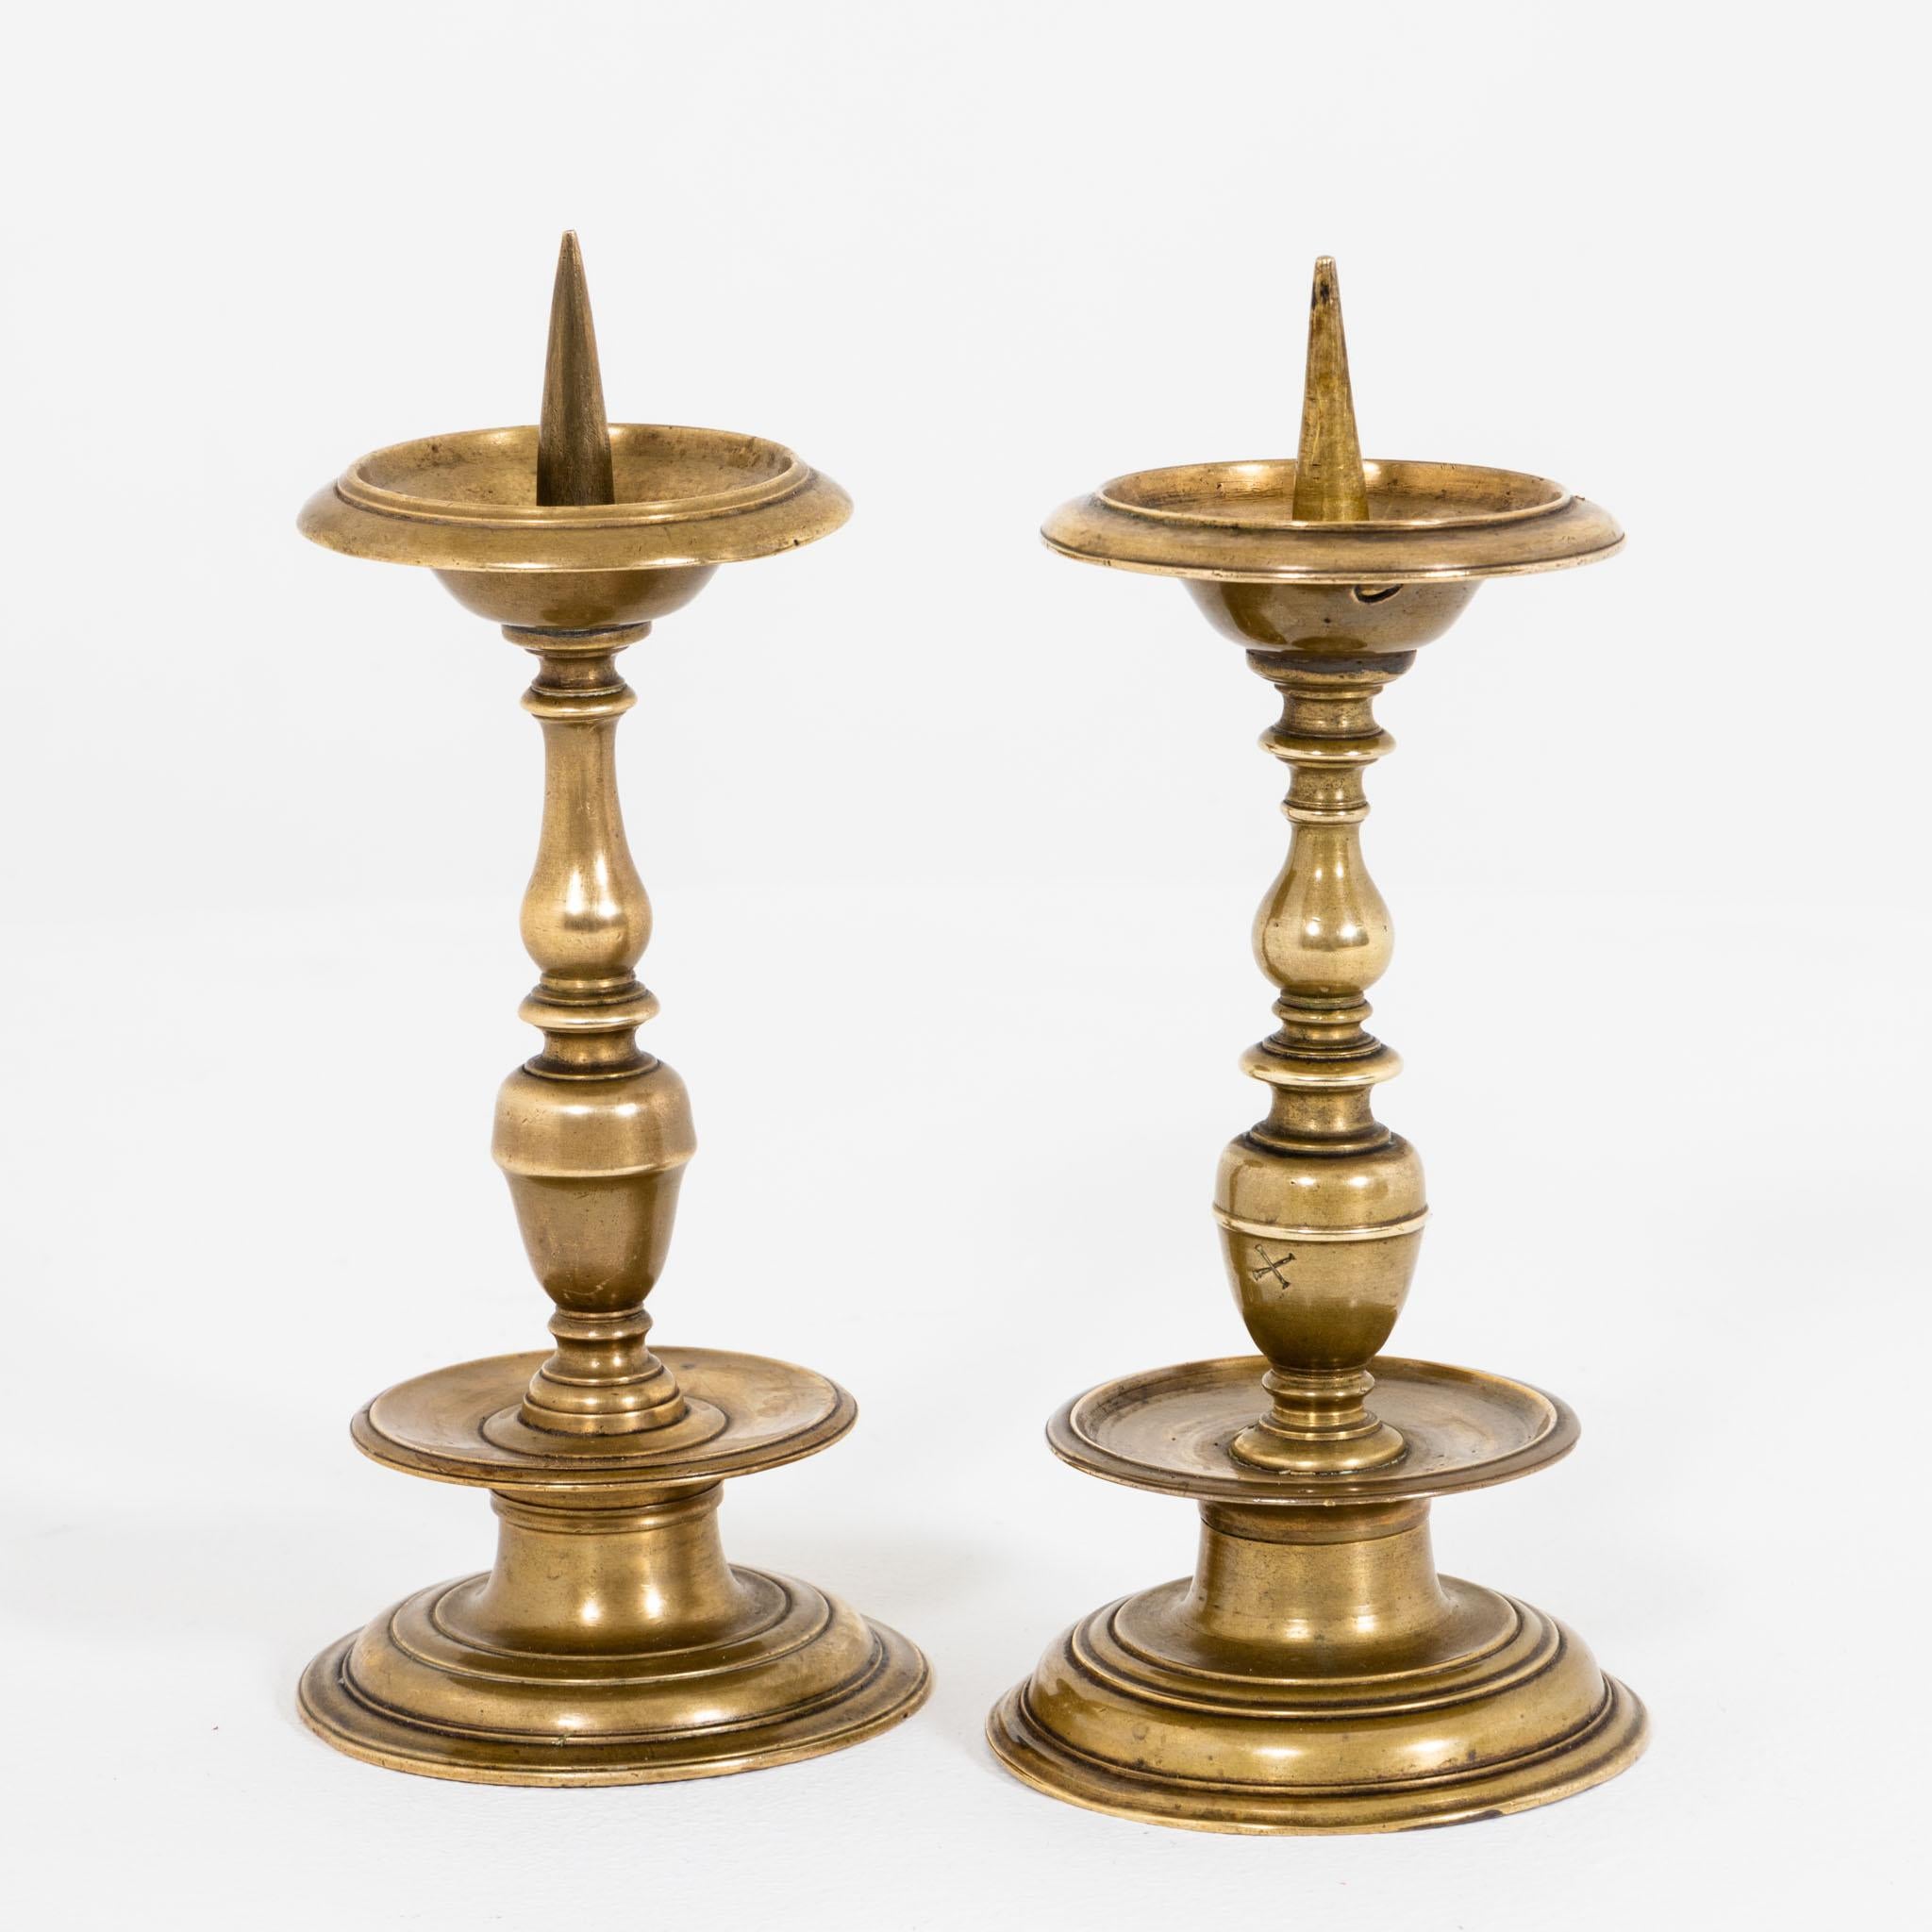 Zwei Kerzenständer aus Messing mit balustradenförmigen Schäften und Tropfschalen mit Stacheln. Die Kerzenhalter sind nicht identisch in ihrem Design, sondern ergänzen sich dekorativ zu einem harmonischen Ensemble. Einer mit einem kleinen Loch in der